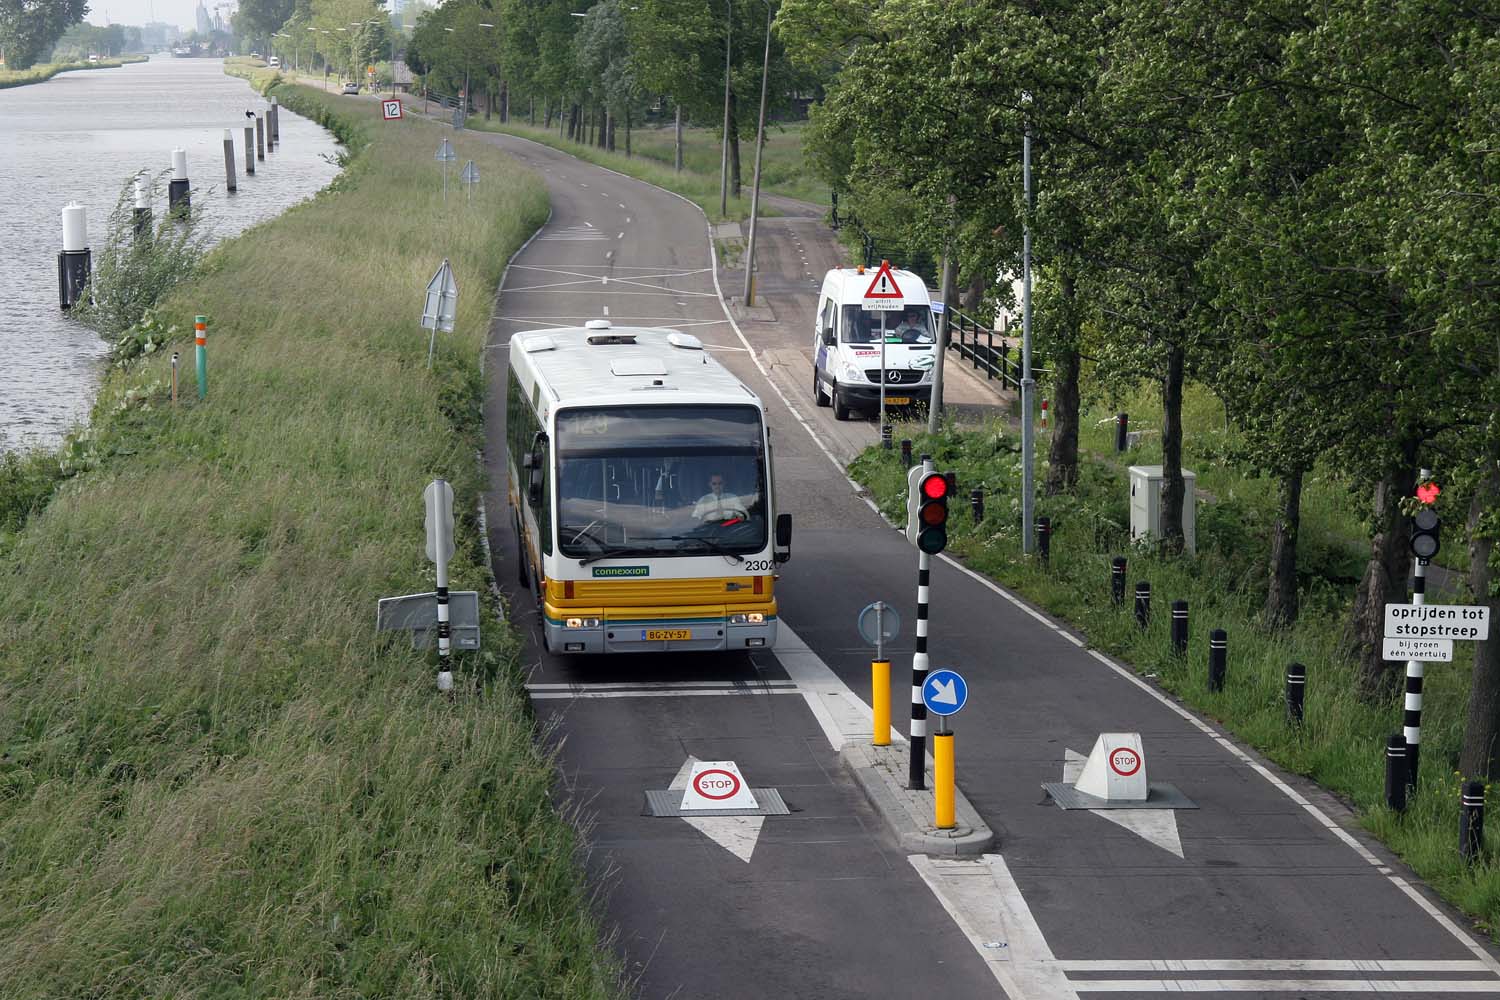 Rotterdamseweg met de gehate poller die sluipverkeer vertraagt